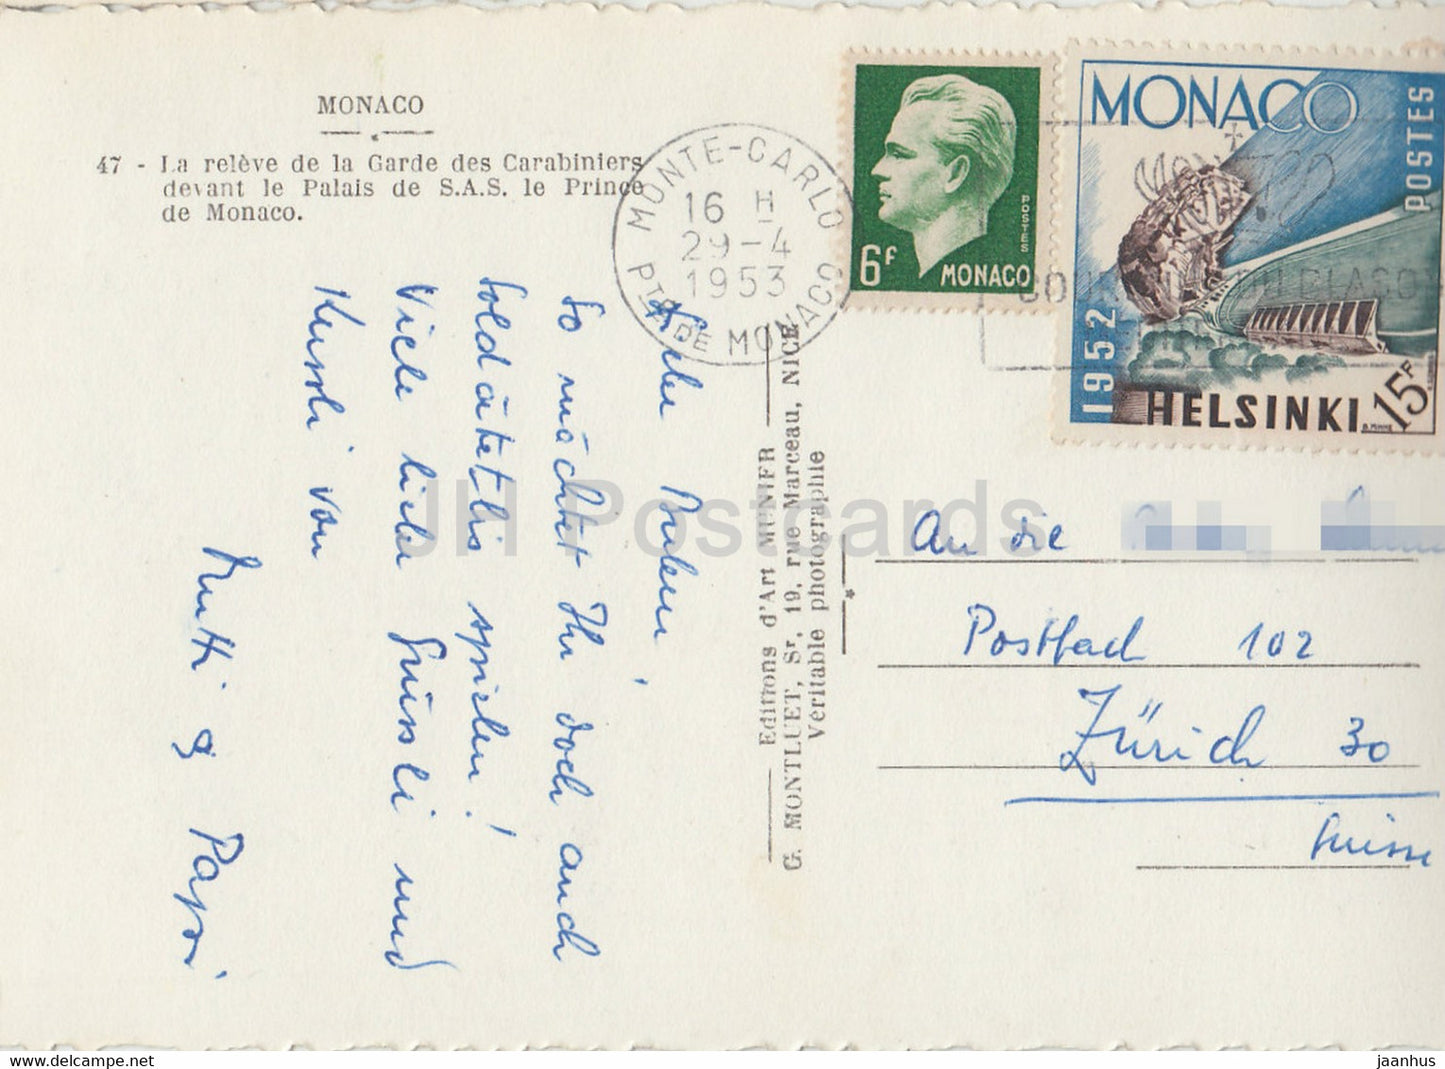 La releve de la Garde des Carabiniers devant le Palais de SAS le Prince de Monaco - old postcard - 1953 - Monaco - used